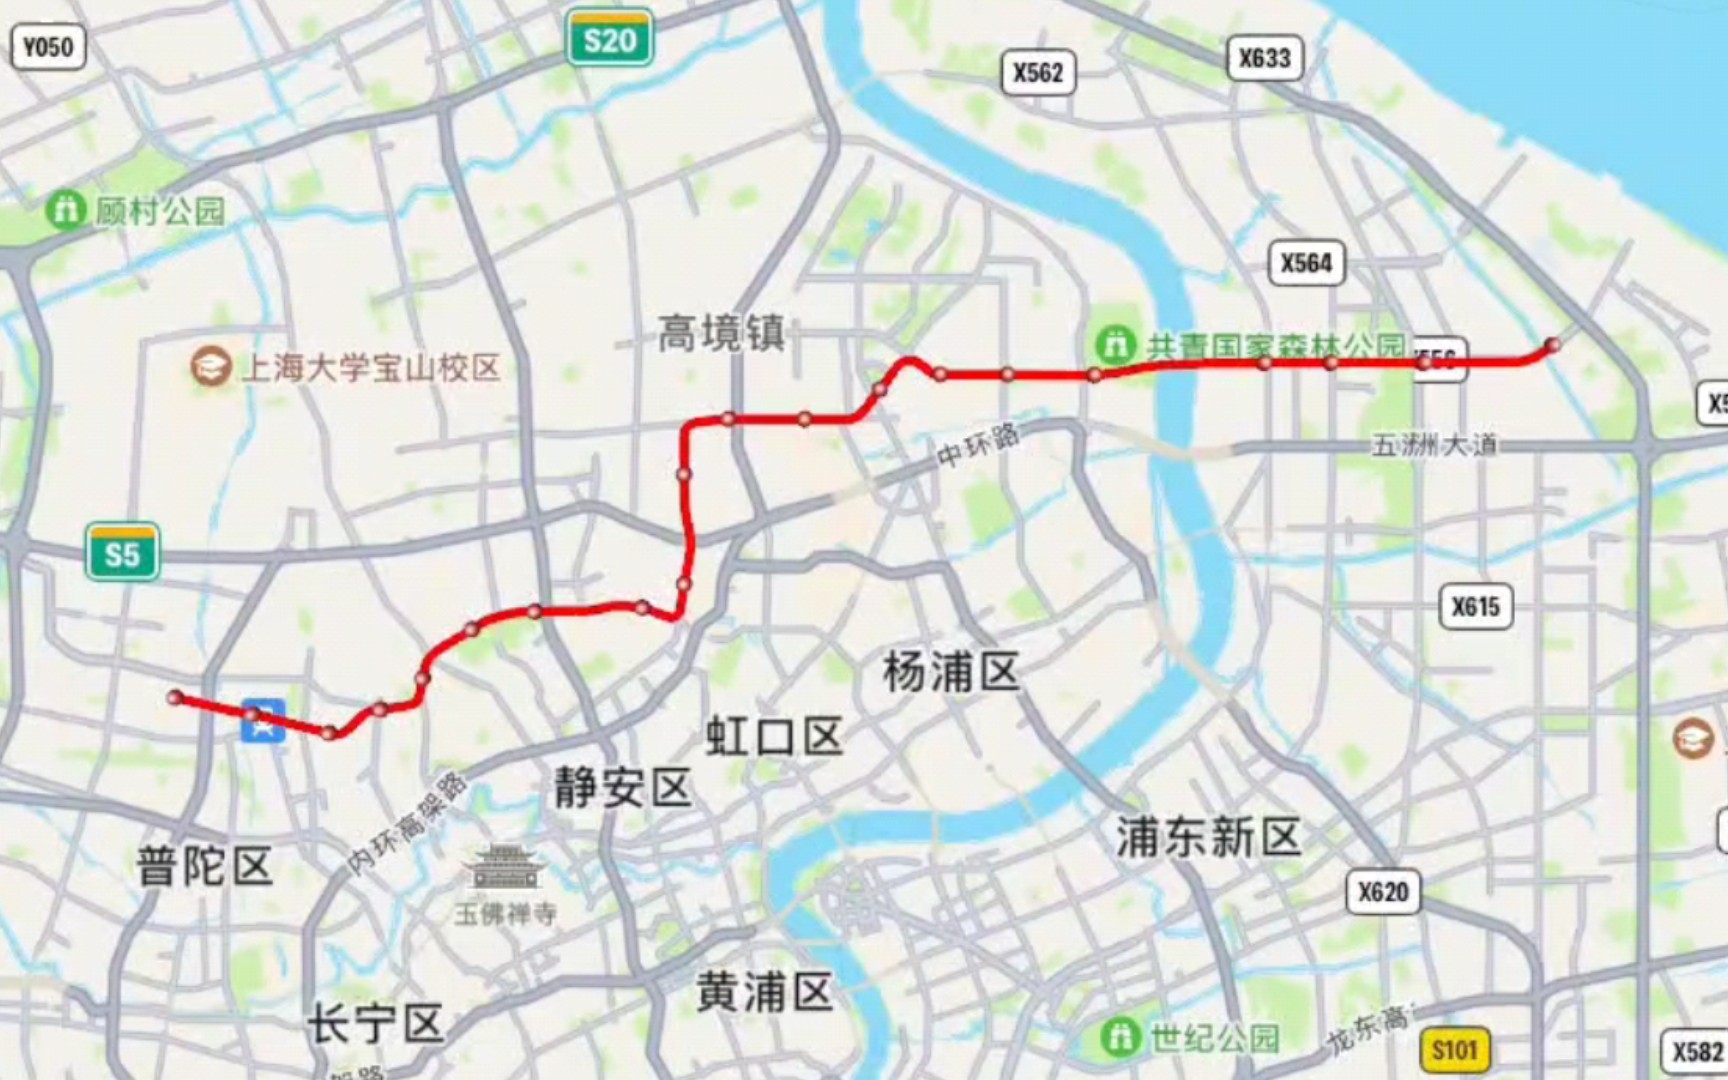 【上海地铁】20号线行驶路线(金昌路→共青森林公园→新园路)